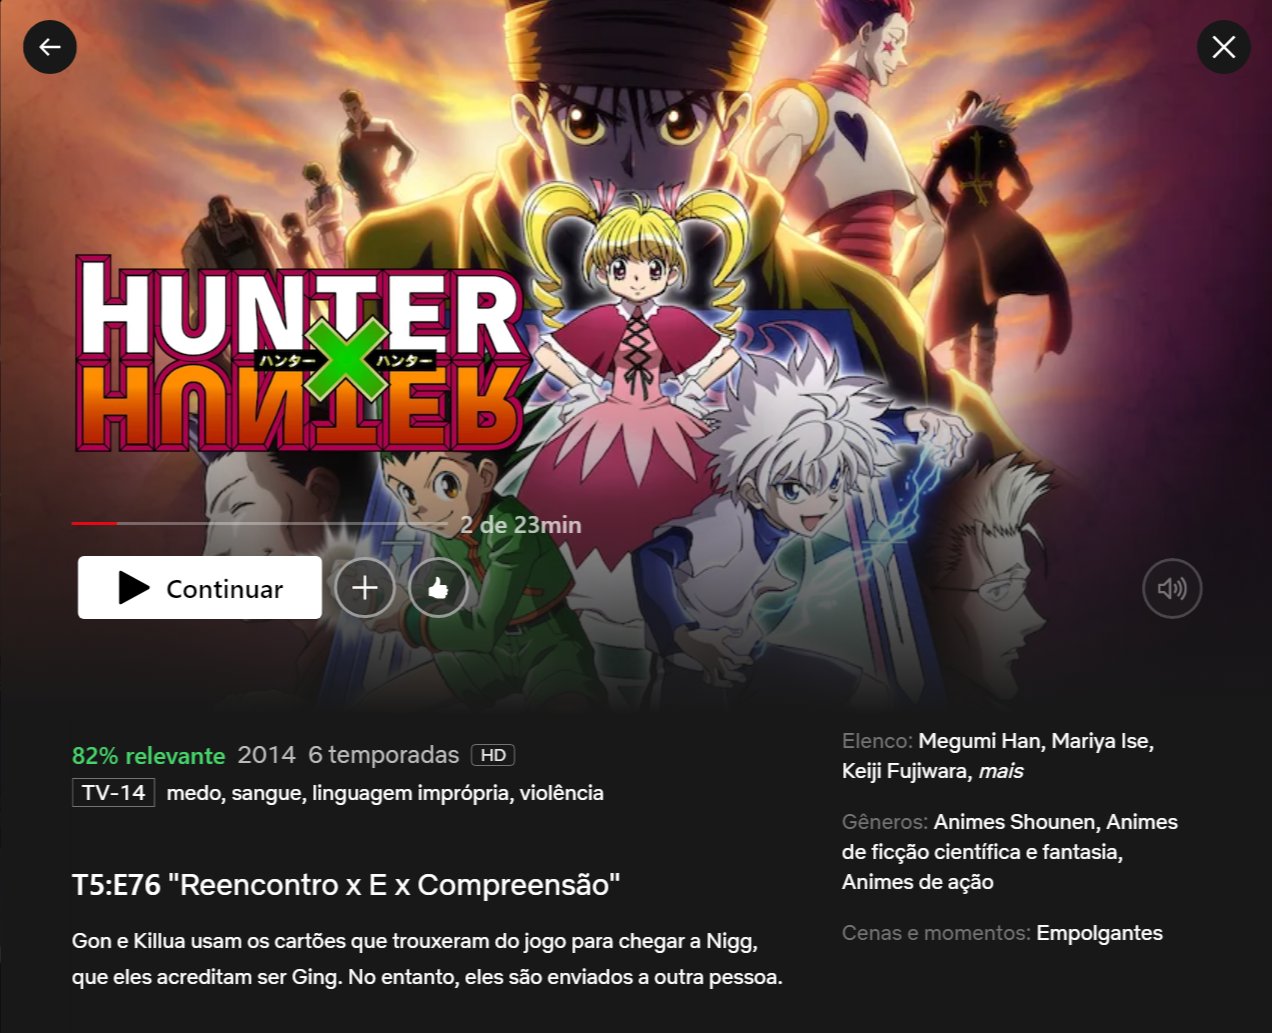 Yato on X: 🆕 Hunter x Hunter (2011) já está sendo exibido DUBLADO na  @PlutoTVBR. É a primeira exibição oficial com DUBLAGEM do anime no Brasil.   / X